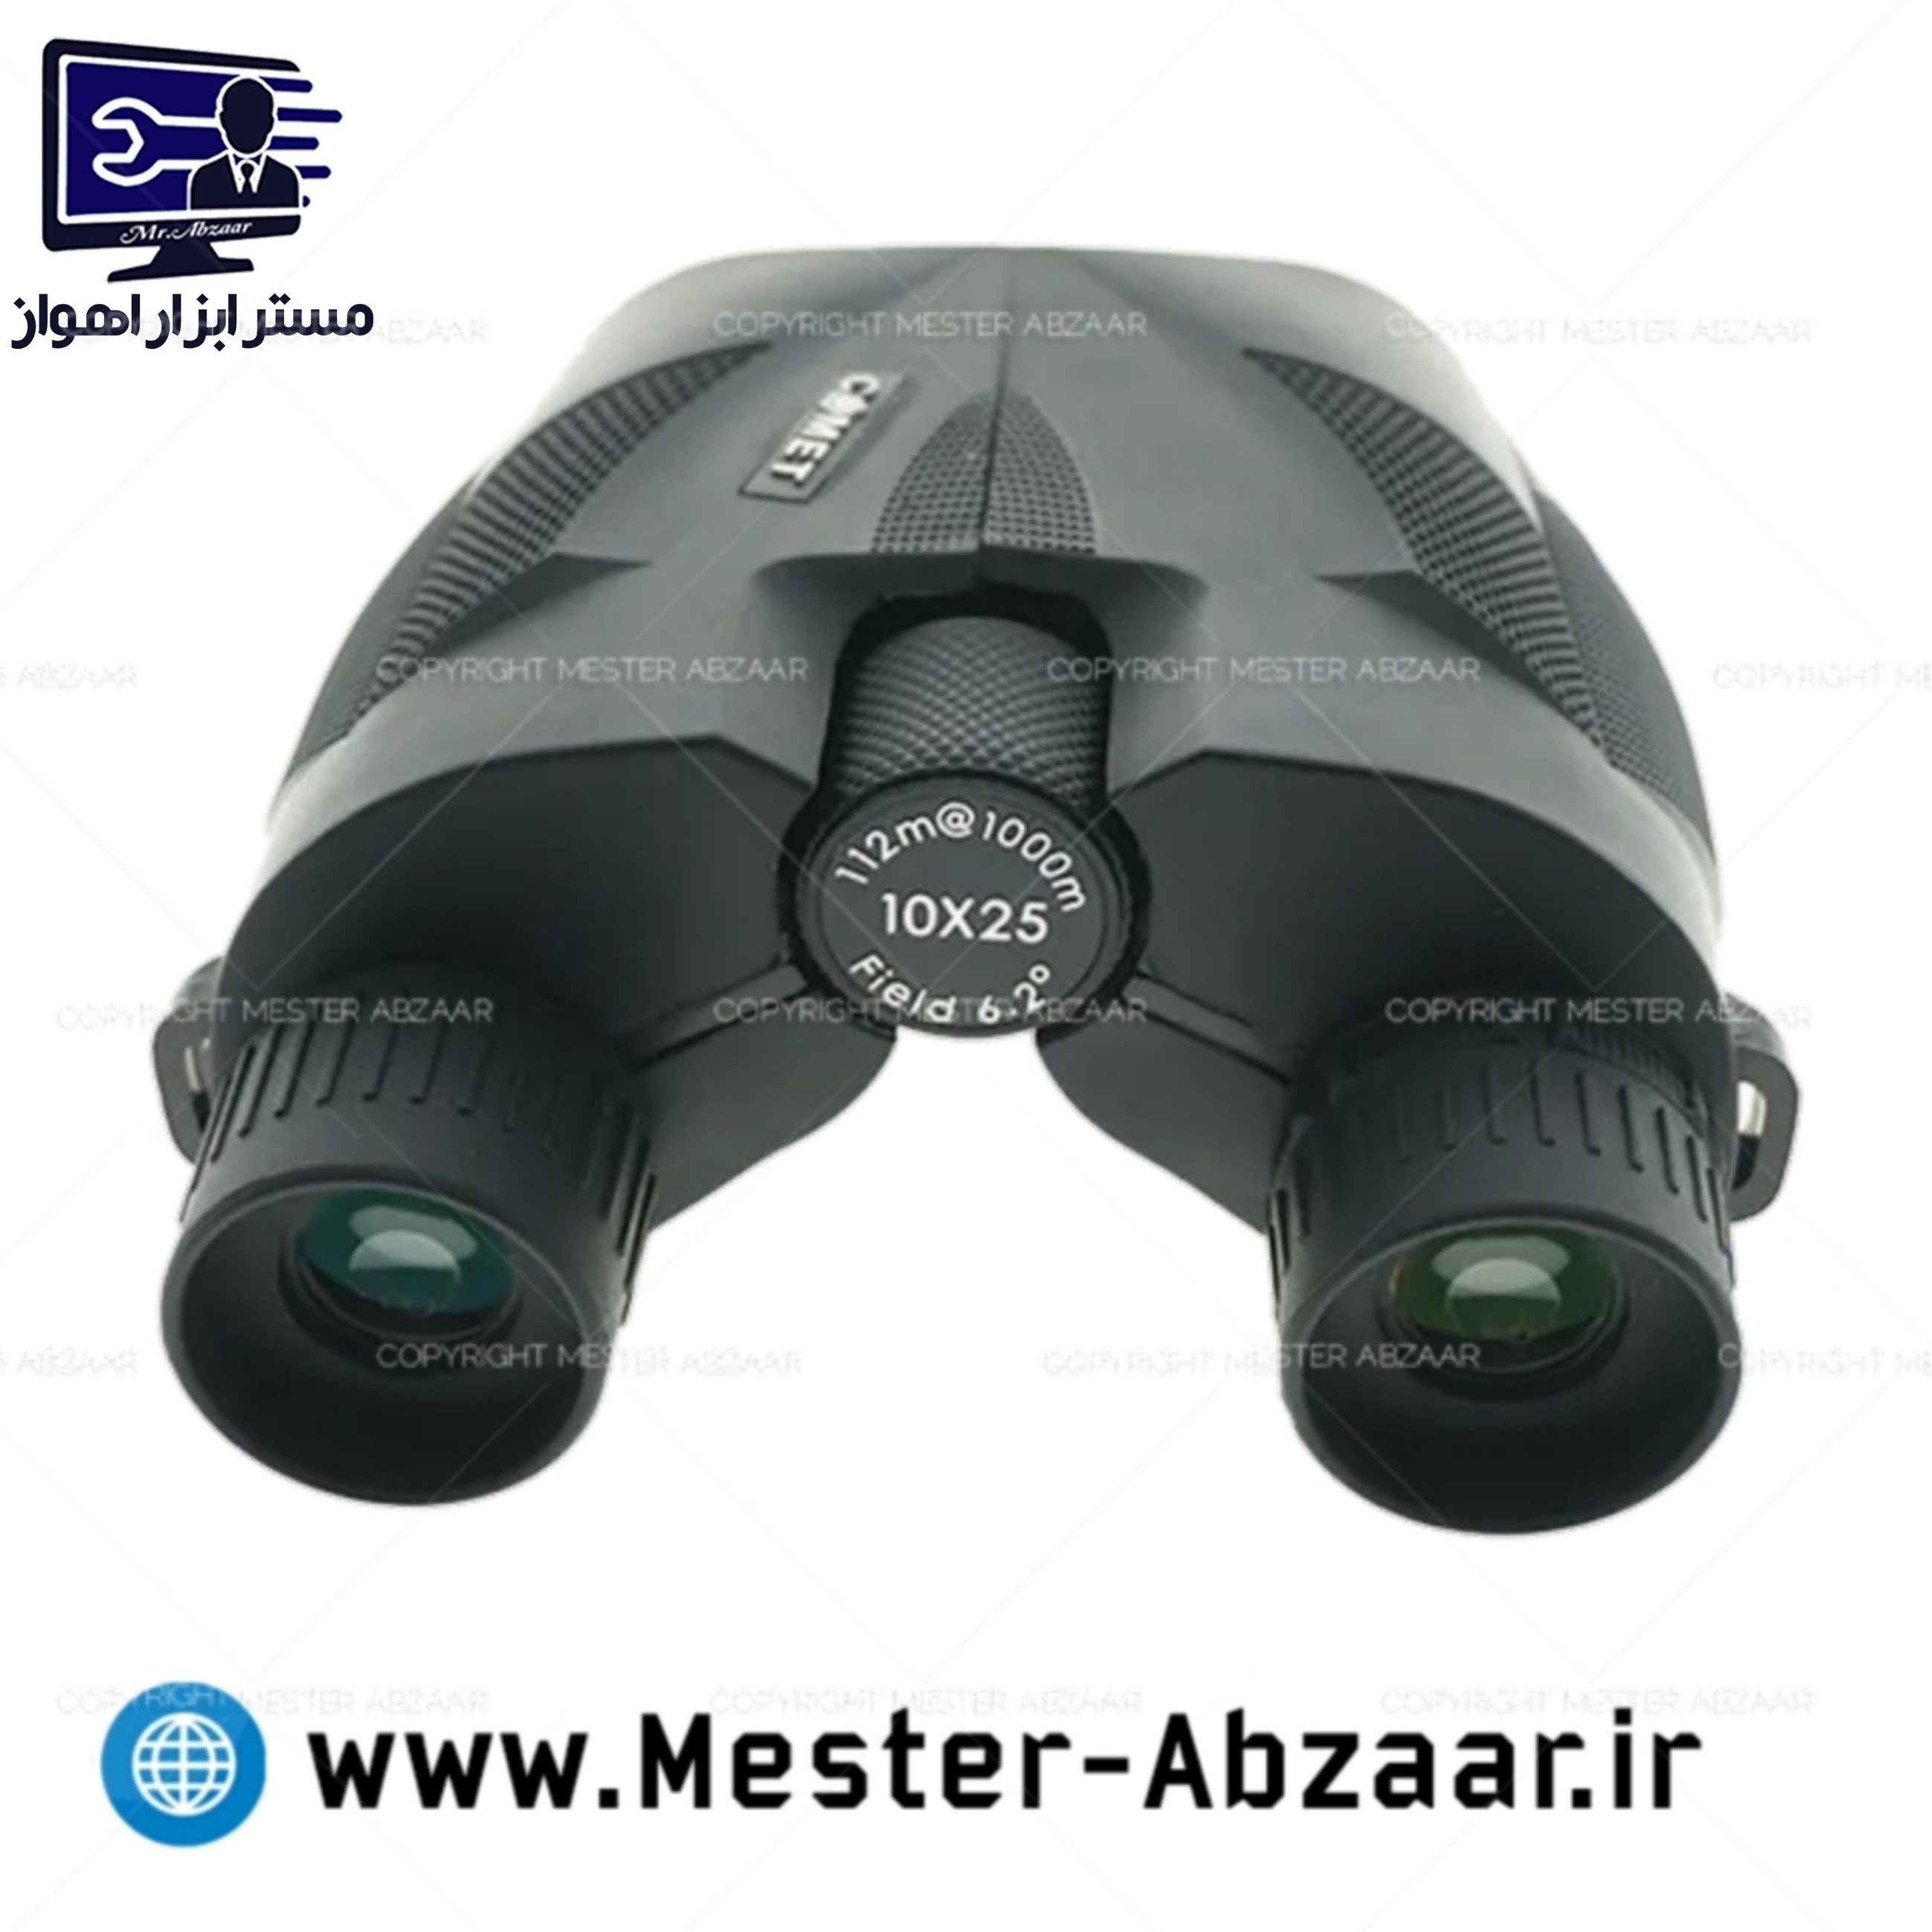 مشخصات دوربین دوچشمی اپتیکال جمع و جور قدرتمند Somet AXU305‏ ‏(10x25) مشکی، در قاب (ORT-150 بیشتر